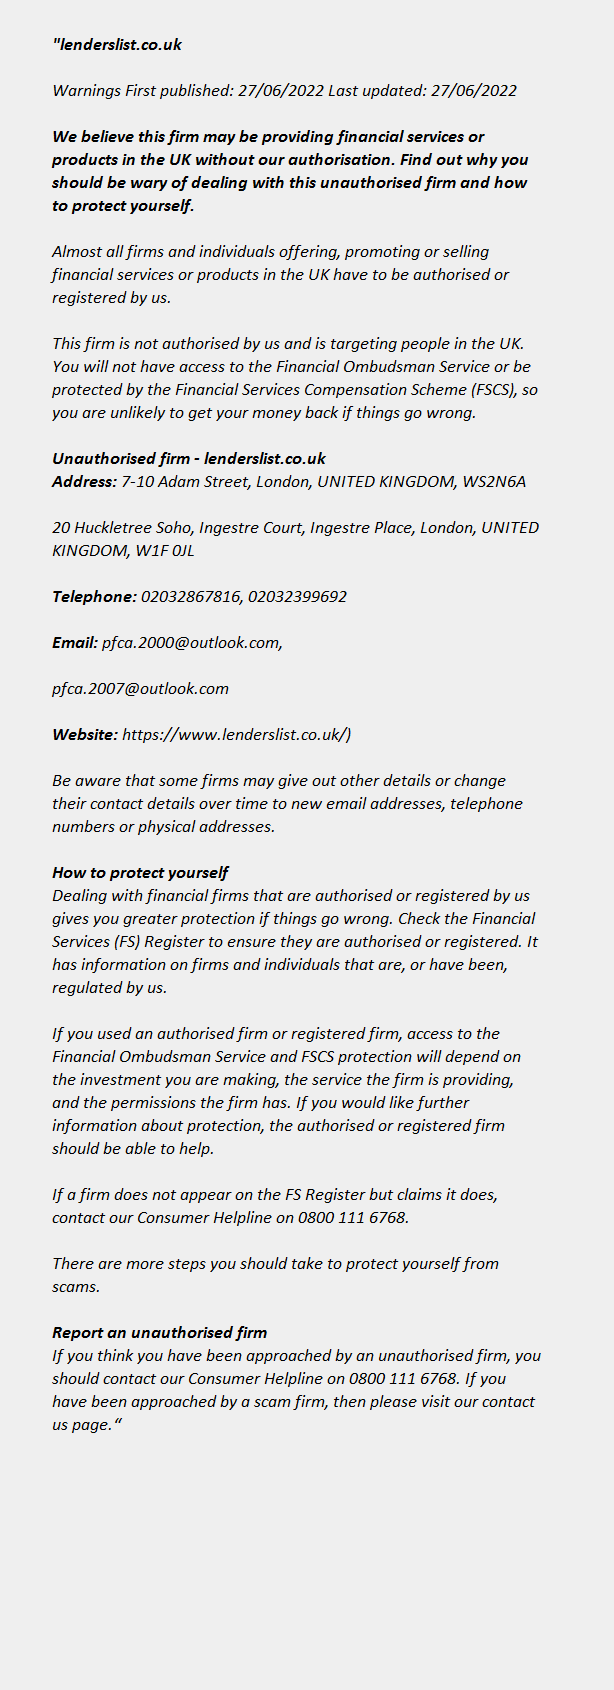 LENDERSLIST.CO.UK ++ FCA Warning List 